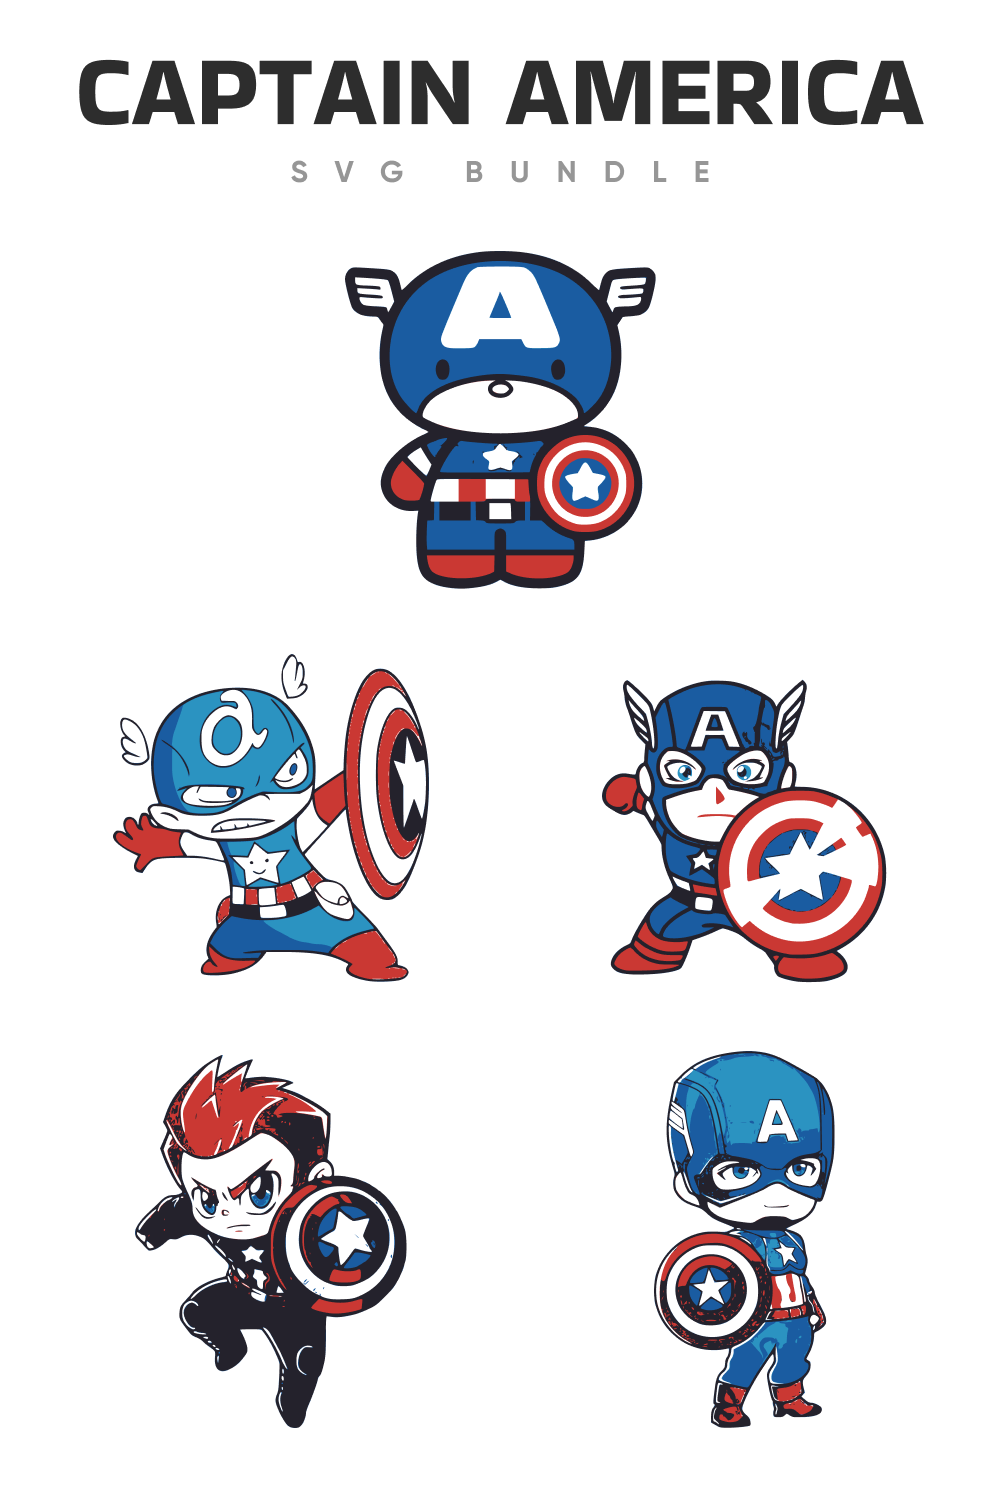 Cartoon Captain America in blue.